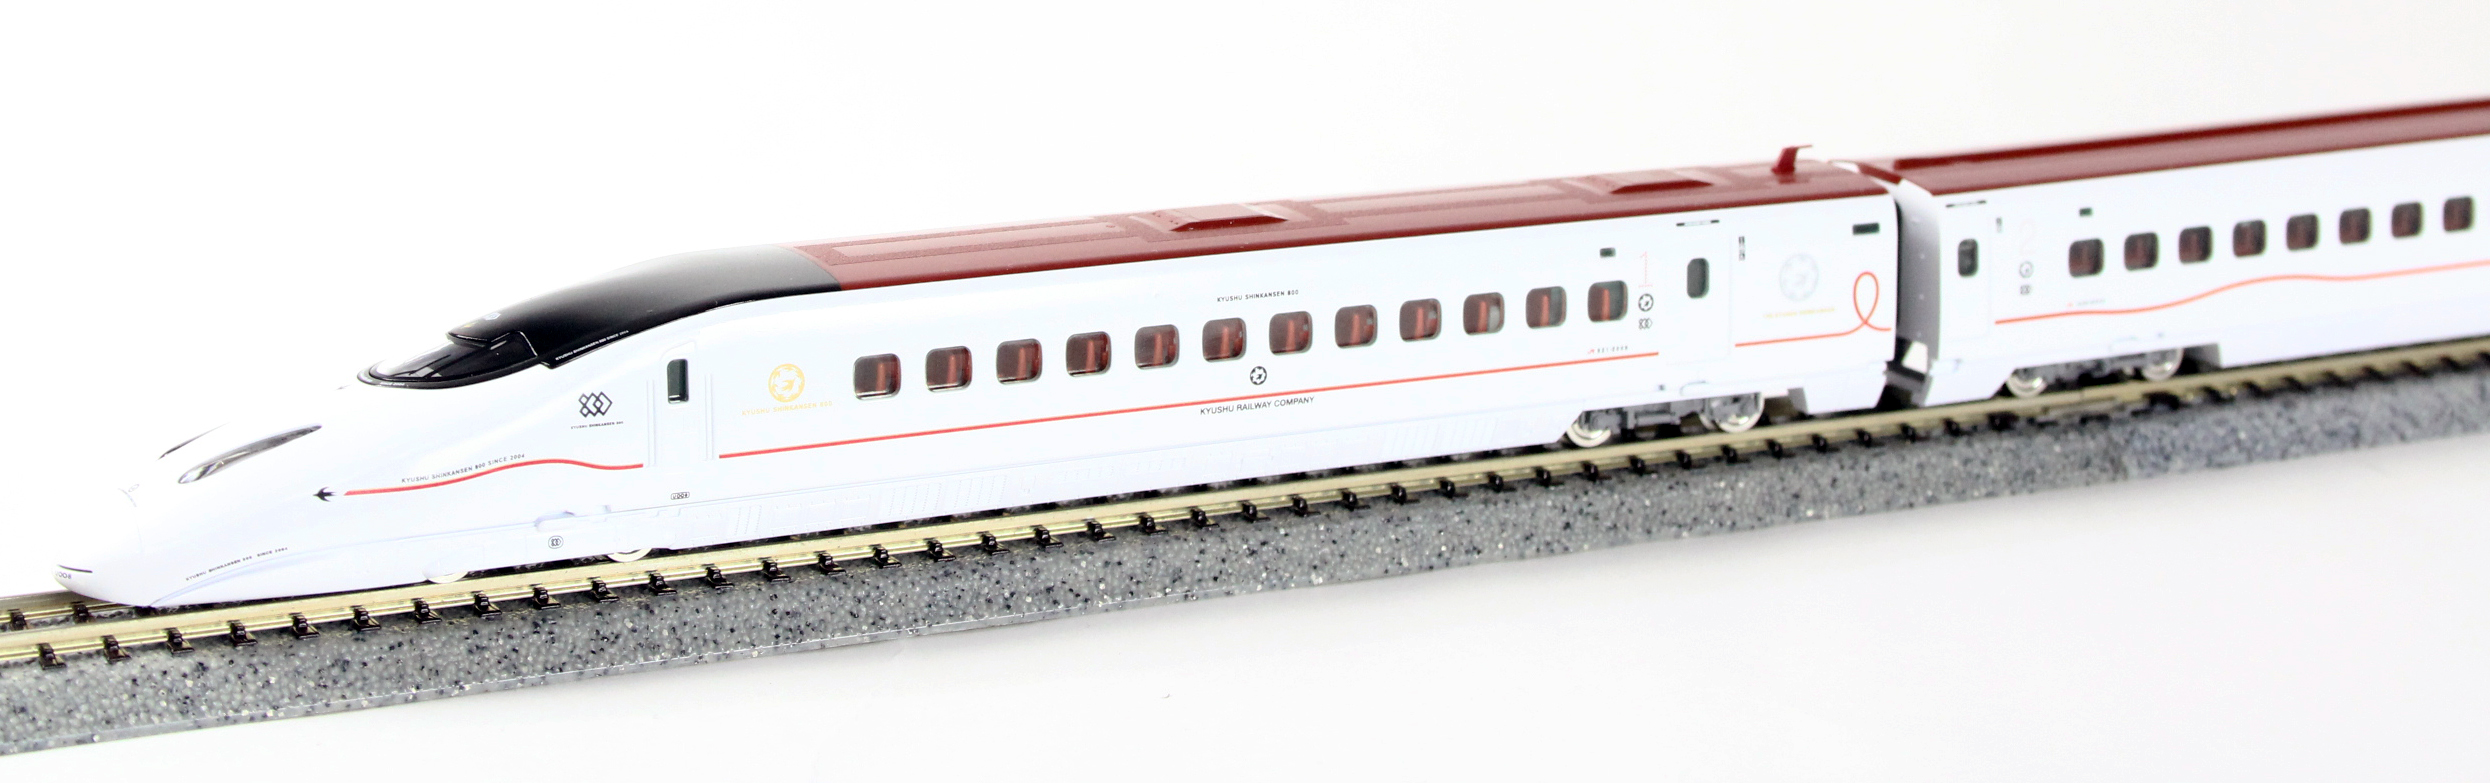 トミックス 98615 九州新幹線800系2000番台セット (6両)（鉄道模型・N 